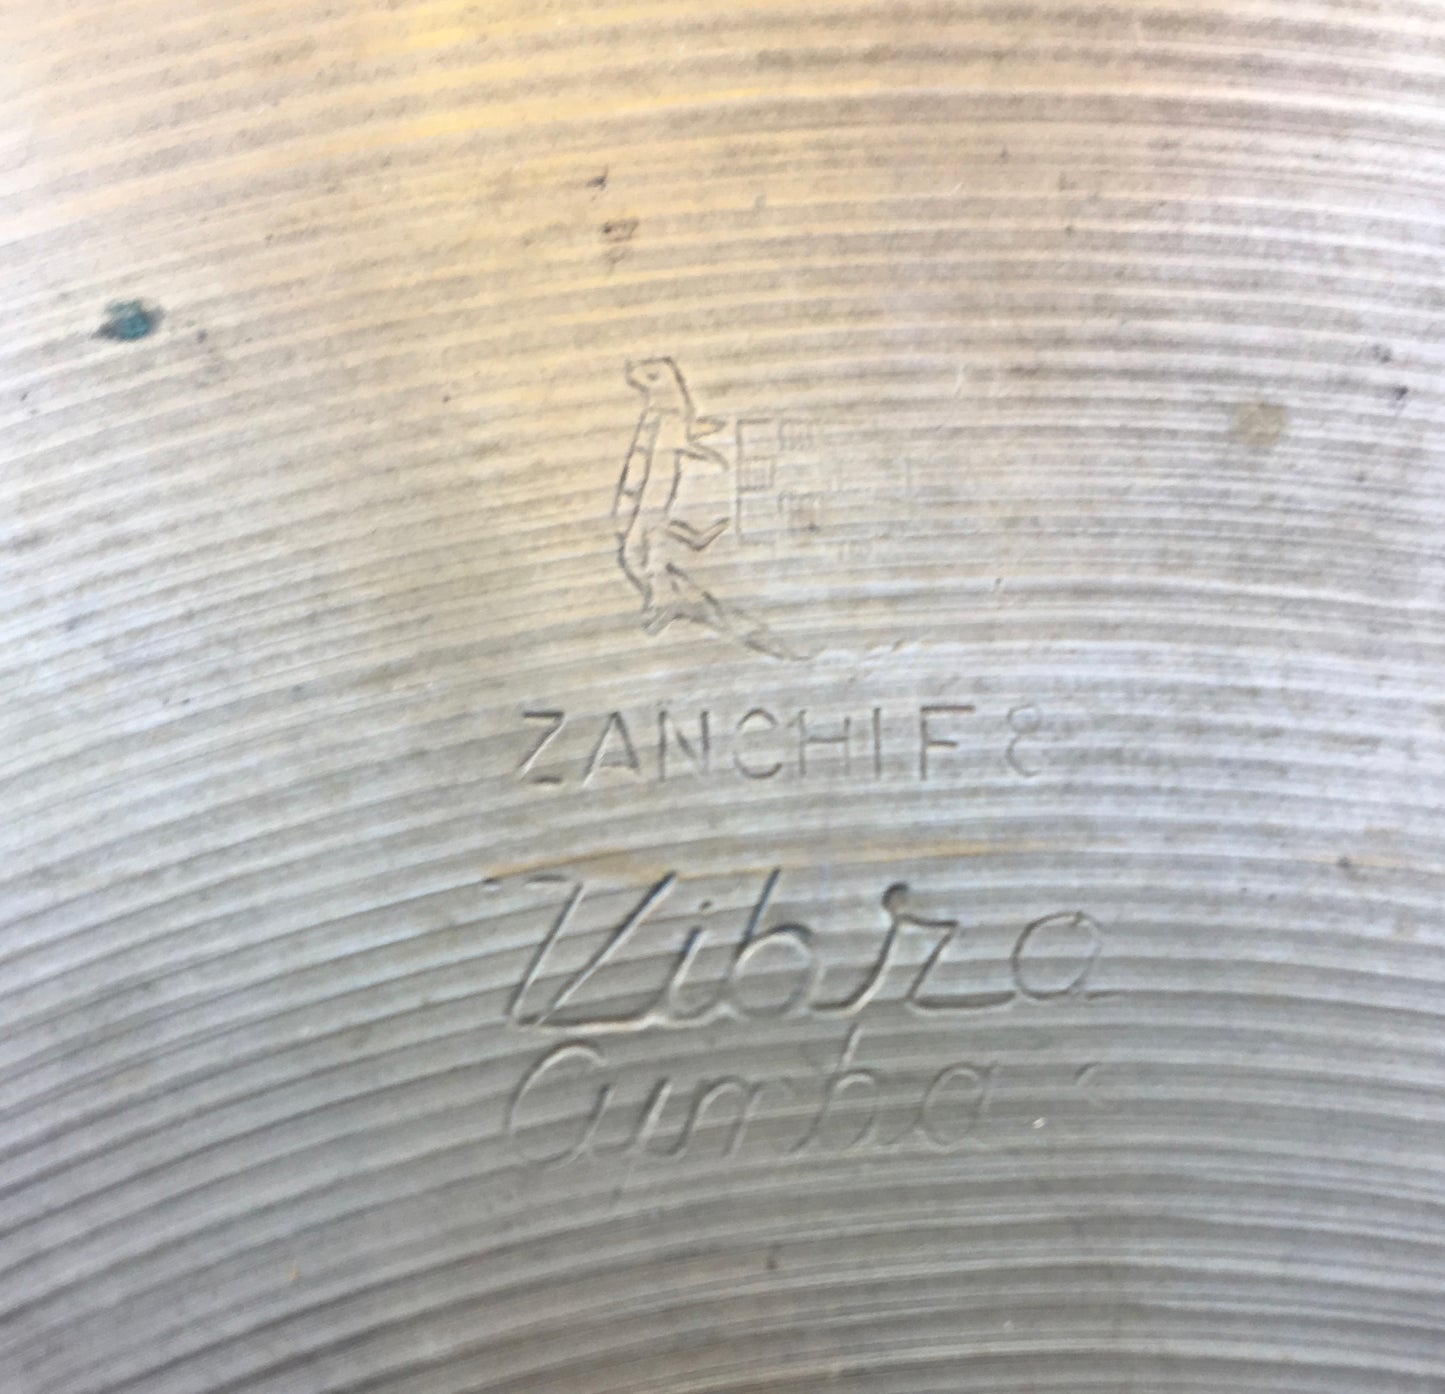 15" Italian Zanchi F&F Vibra Hi Hat Cymbal Pair UFIP 786/826g #498